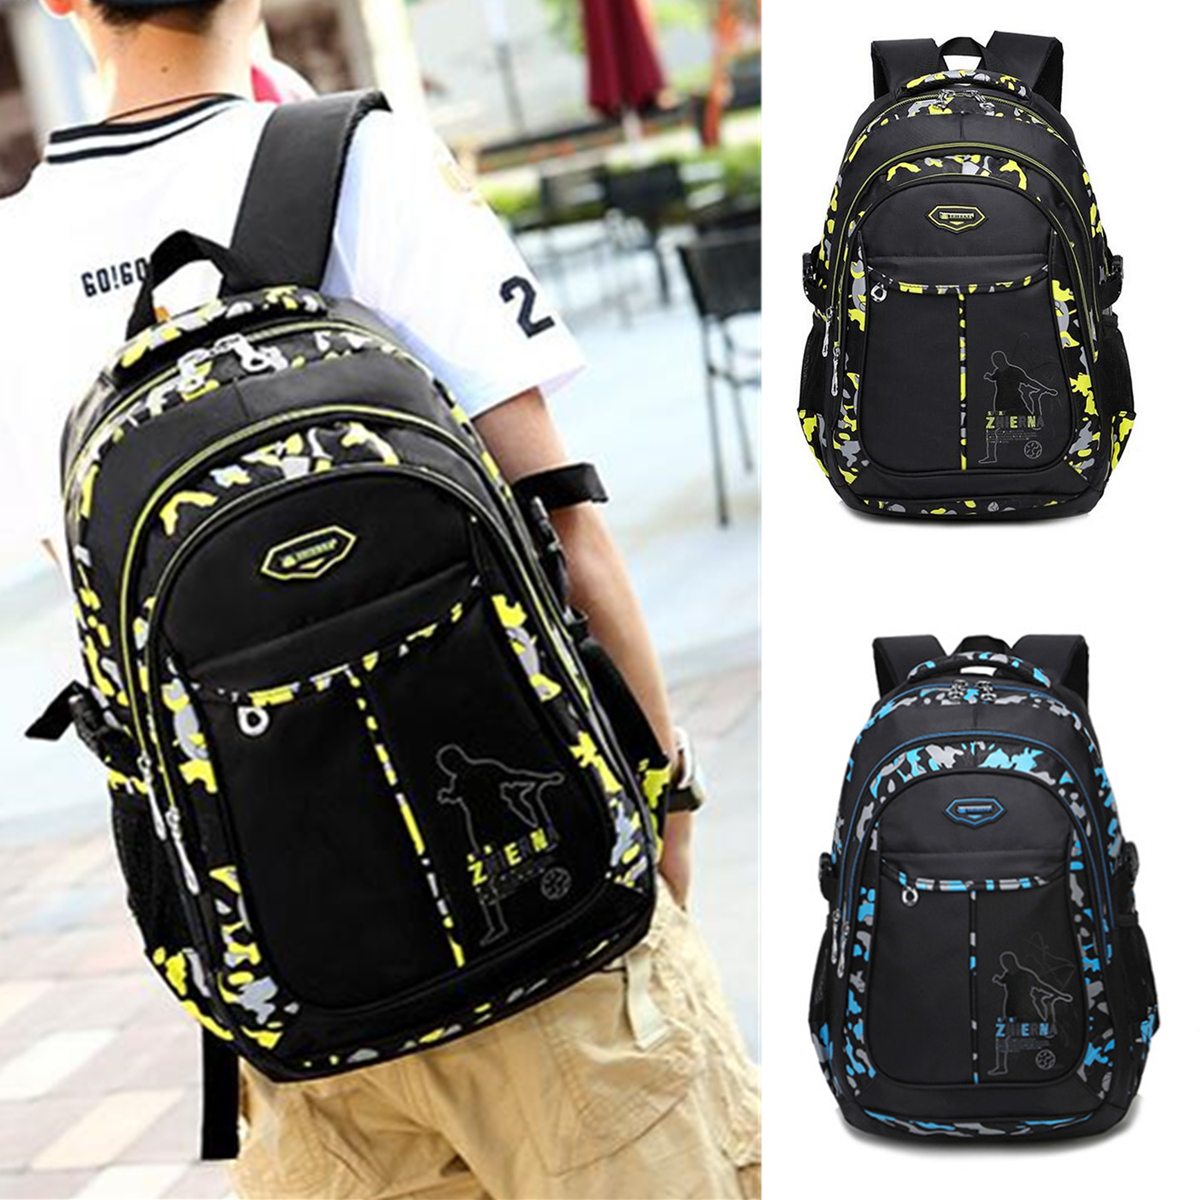 Men-Waterproof-Big-Capacity-Travel-Outdoor-Laptop-Shoulders-Bag-School-Backpack-1188252-1